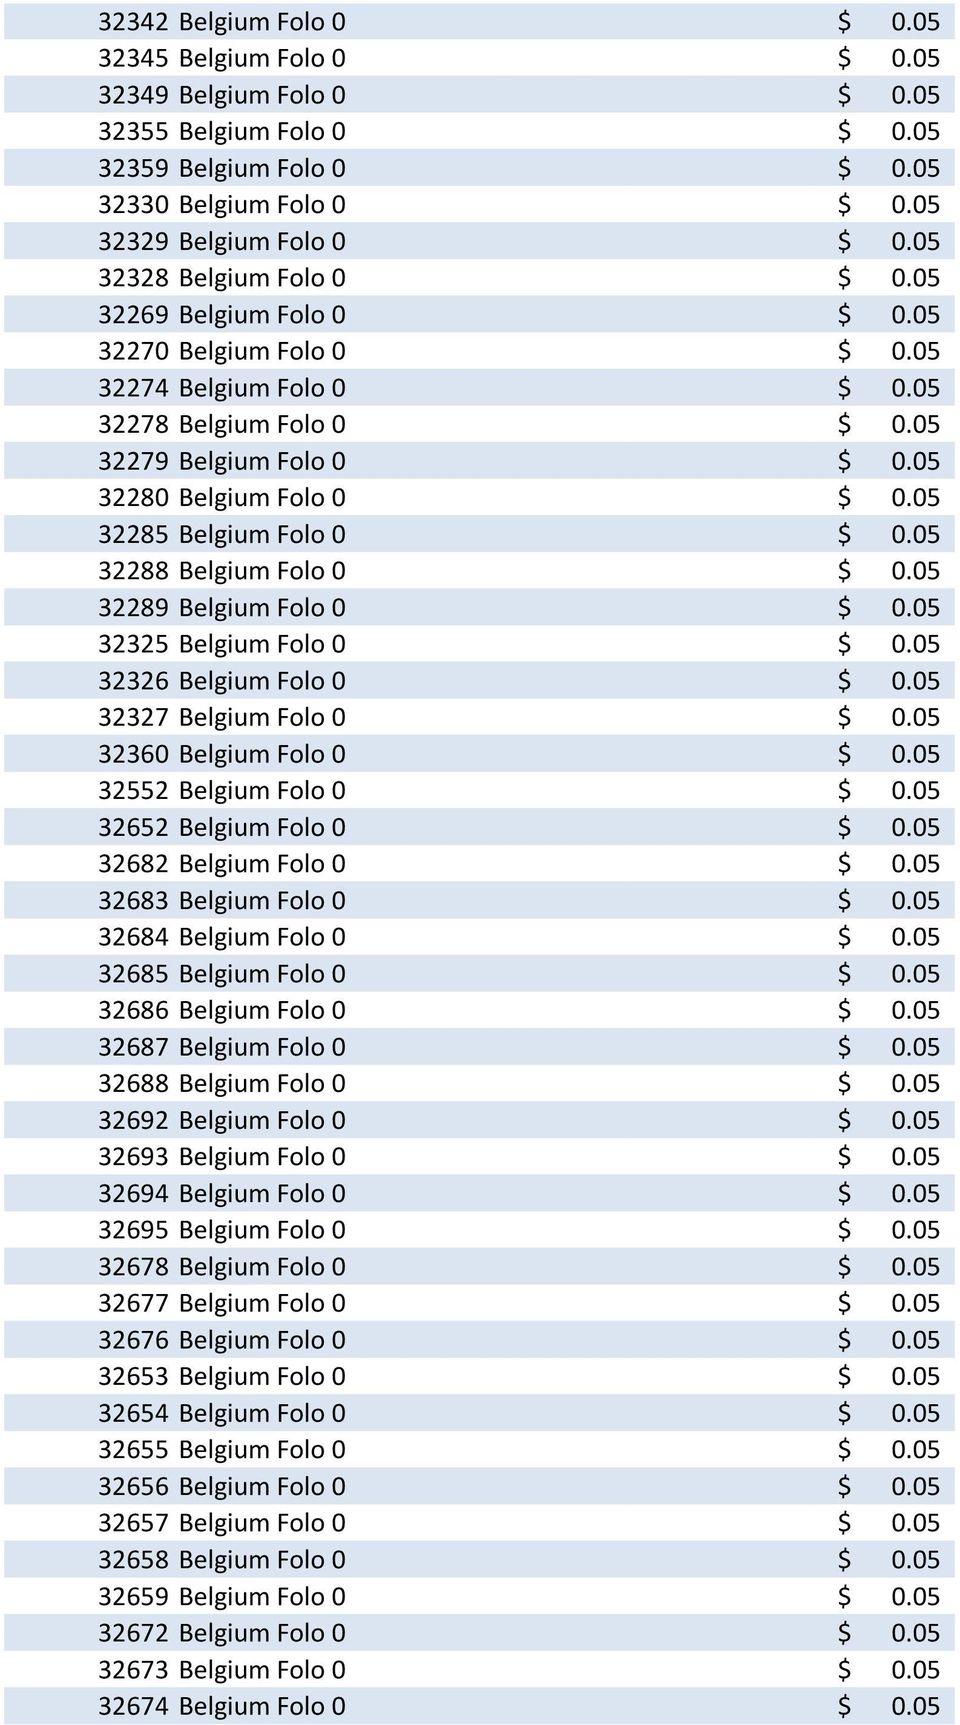 05 32285 Belgium Folo 0 $ 0.05 32288 Belgium Folo 0 $ 0.05 32289 Belgium Folo 0 $ 0.05 32325 Belgium Folo 0 $ 0.05 32326 Belgium Folo 0 $ 0.05 32327 Belgium Folo 0 $ 0.05 32360 Belgium Folo 0 $ 0.